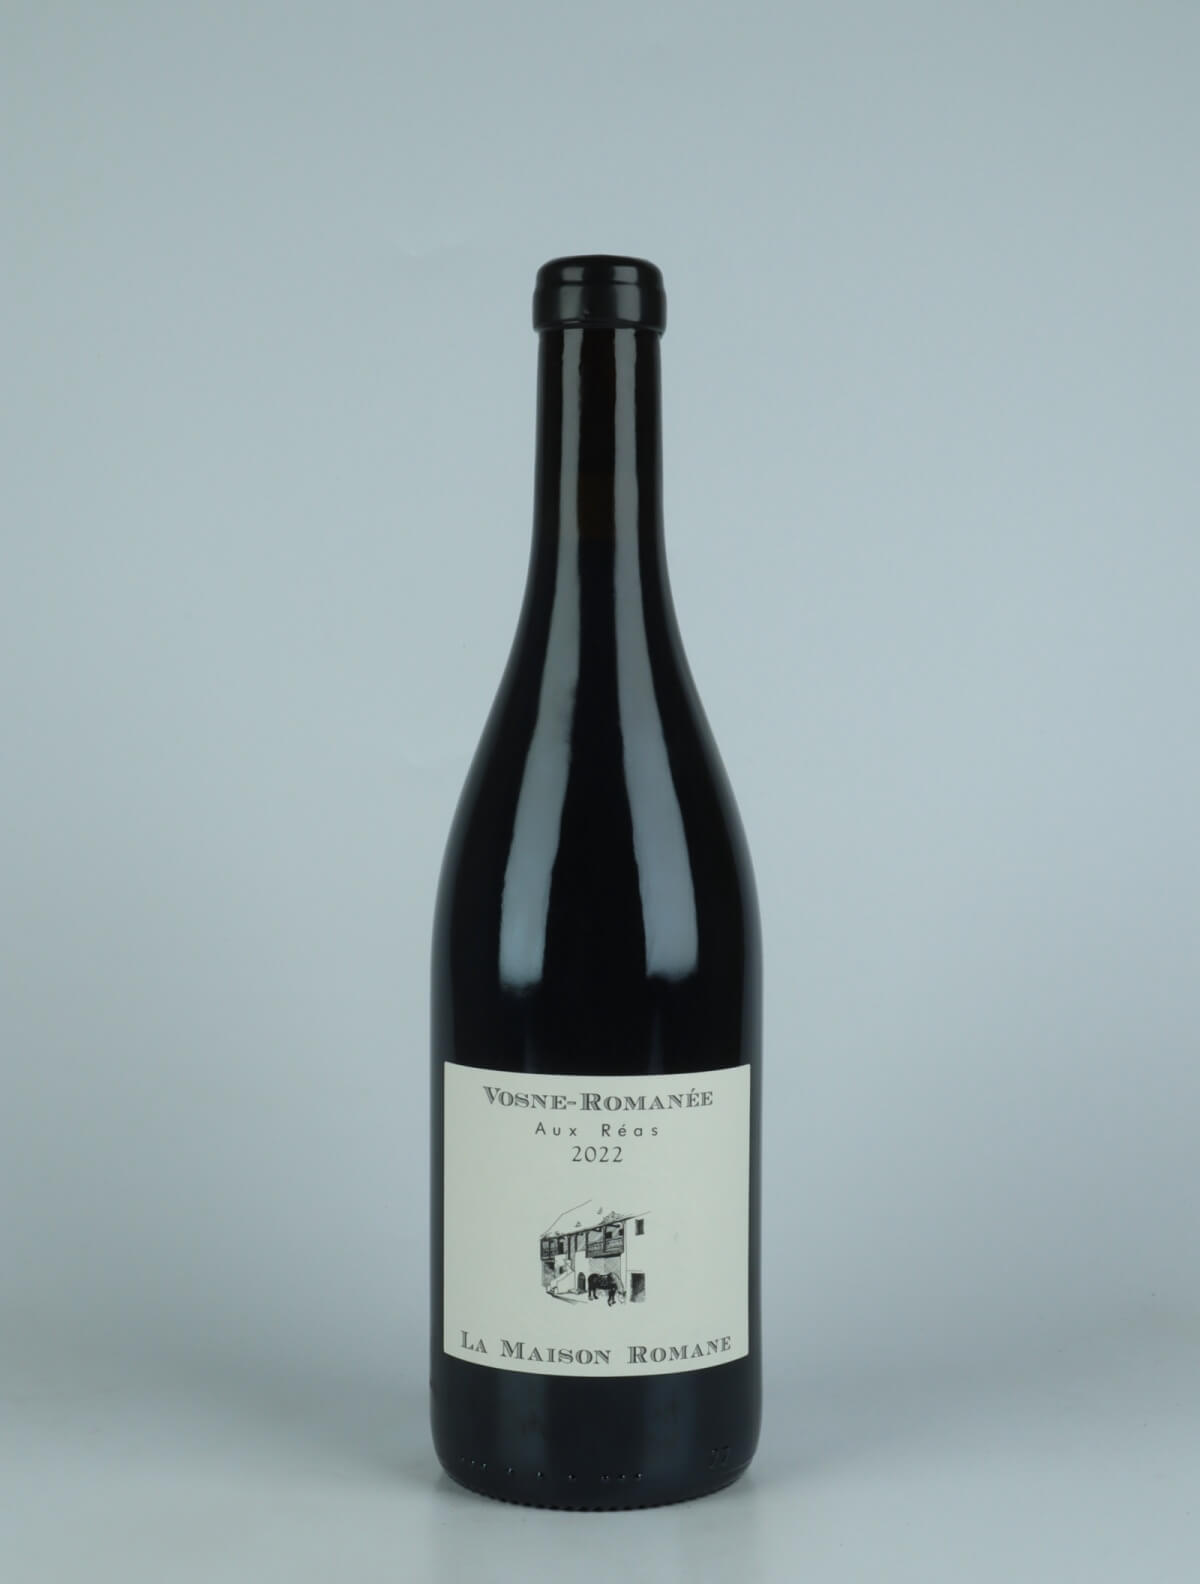 A bottle 2022 Vosne Romanée - Aux Réas Red wine from La Maison Romane, Burgundy in France